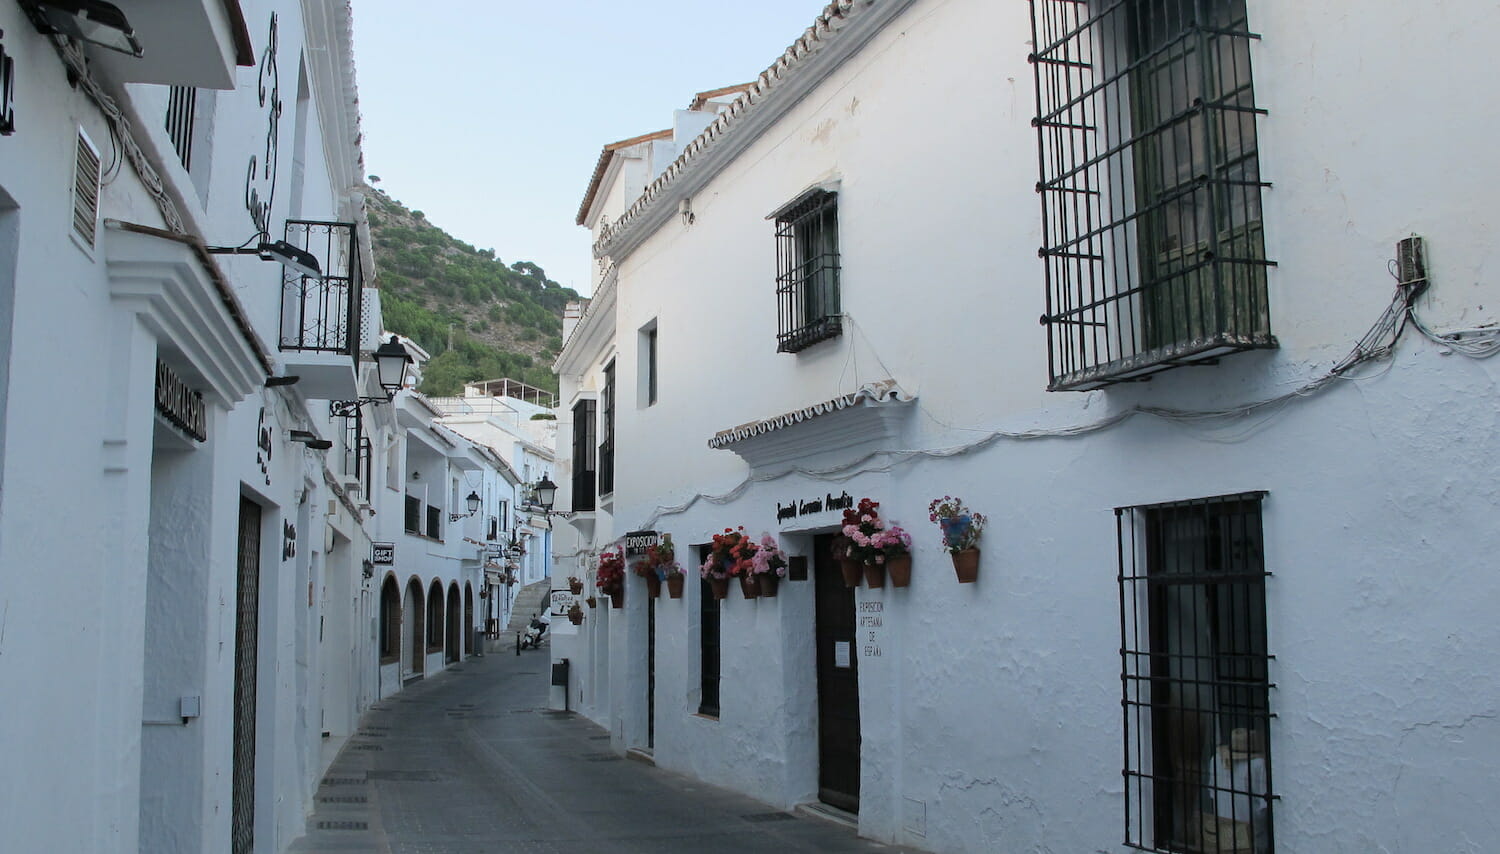 Calle de casas blancas en Mijas, Malaga